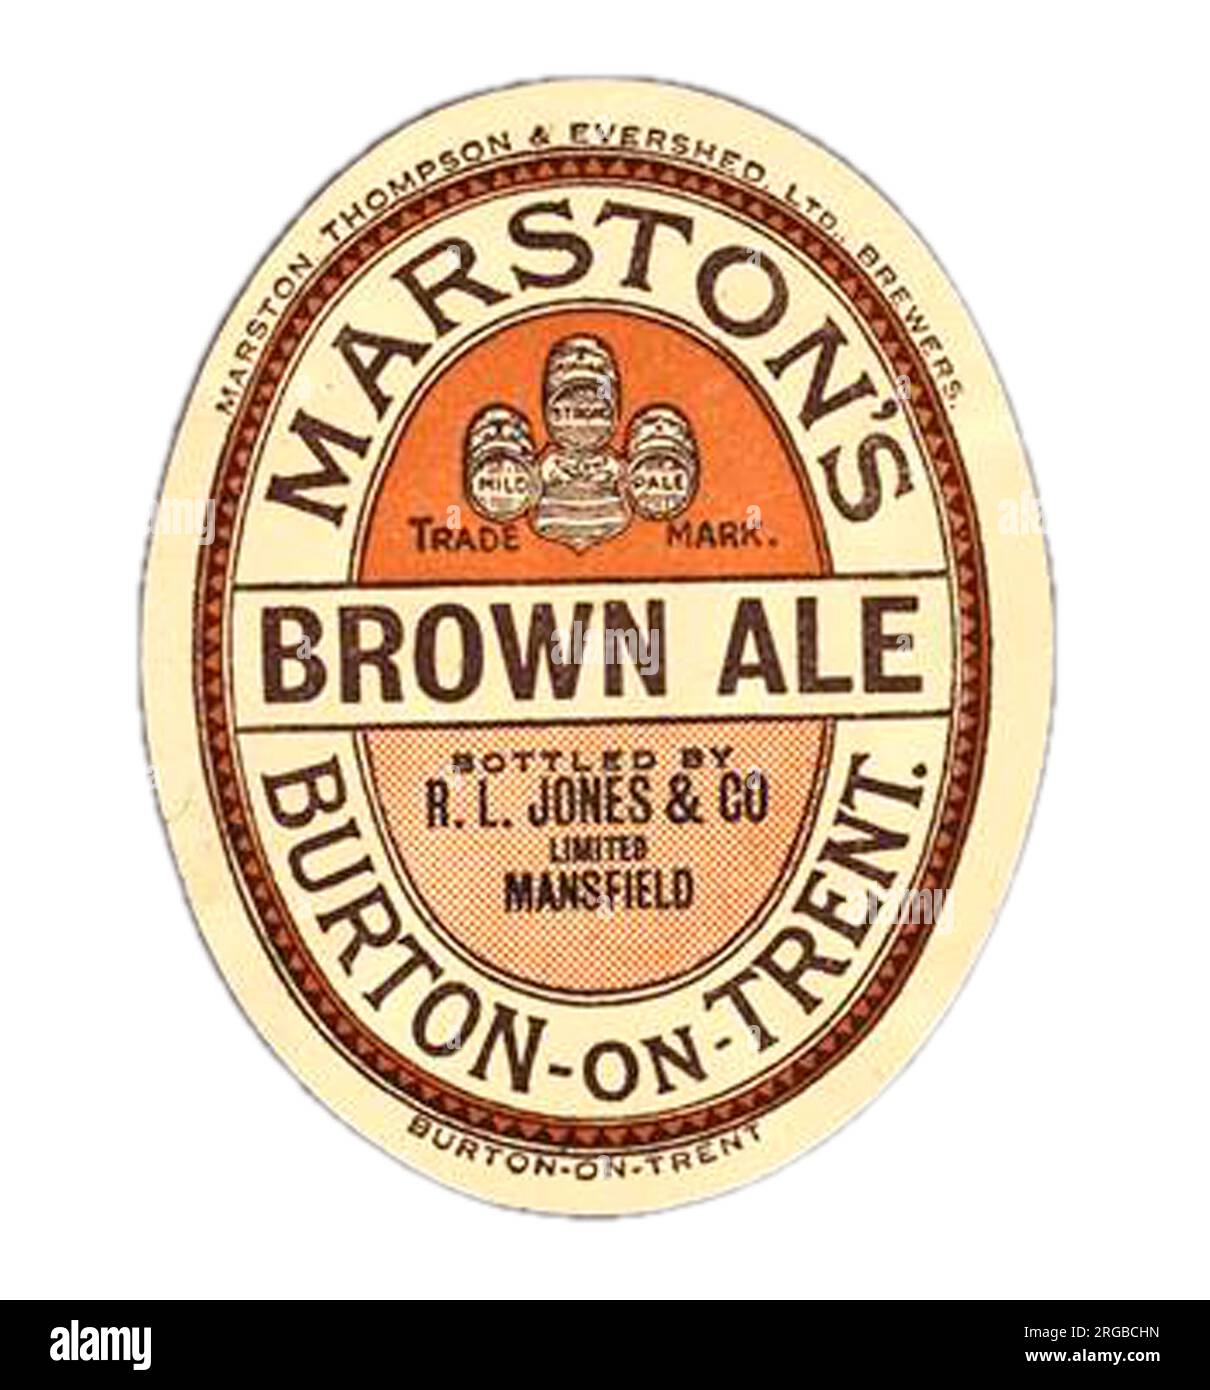 Marston's Brown Ale Stock Photo